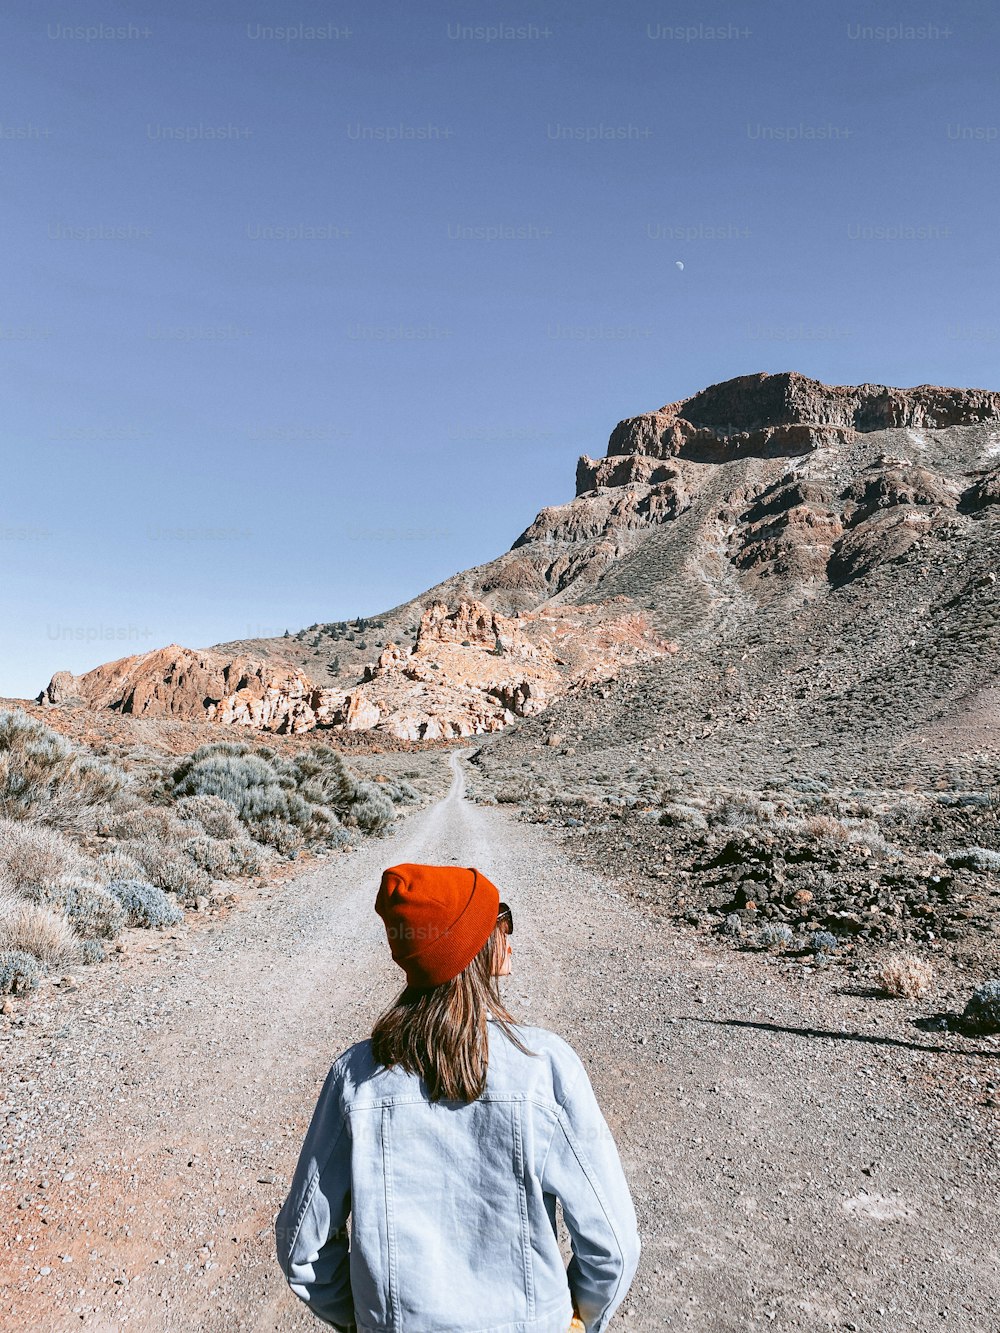 Donna spensierata che corre sulla strada di montagna, godendosi il viaggio nella valle deserta. Immagine scattata con il cellulare